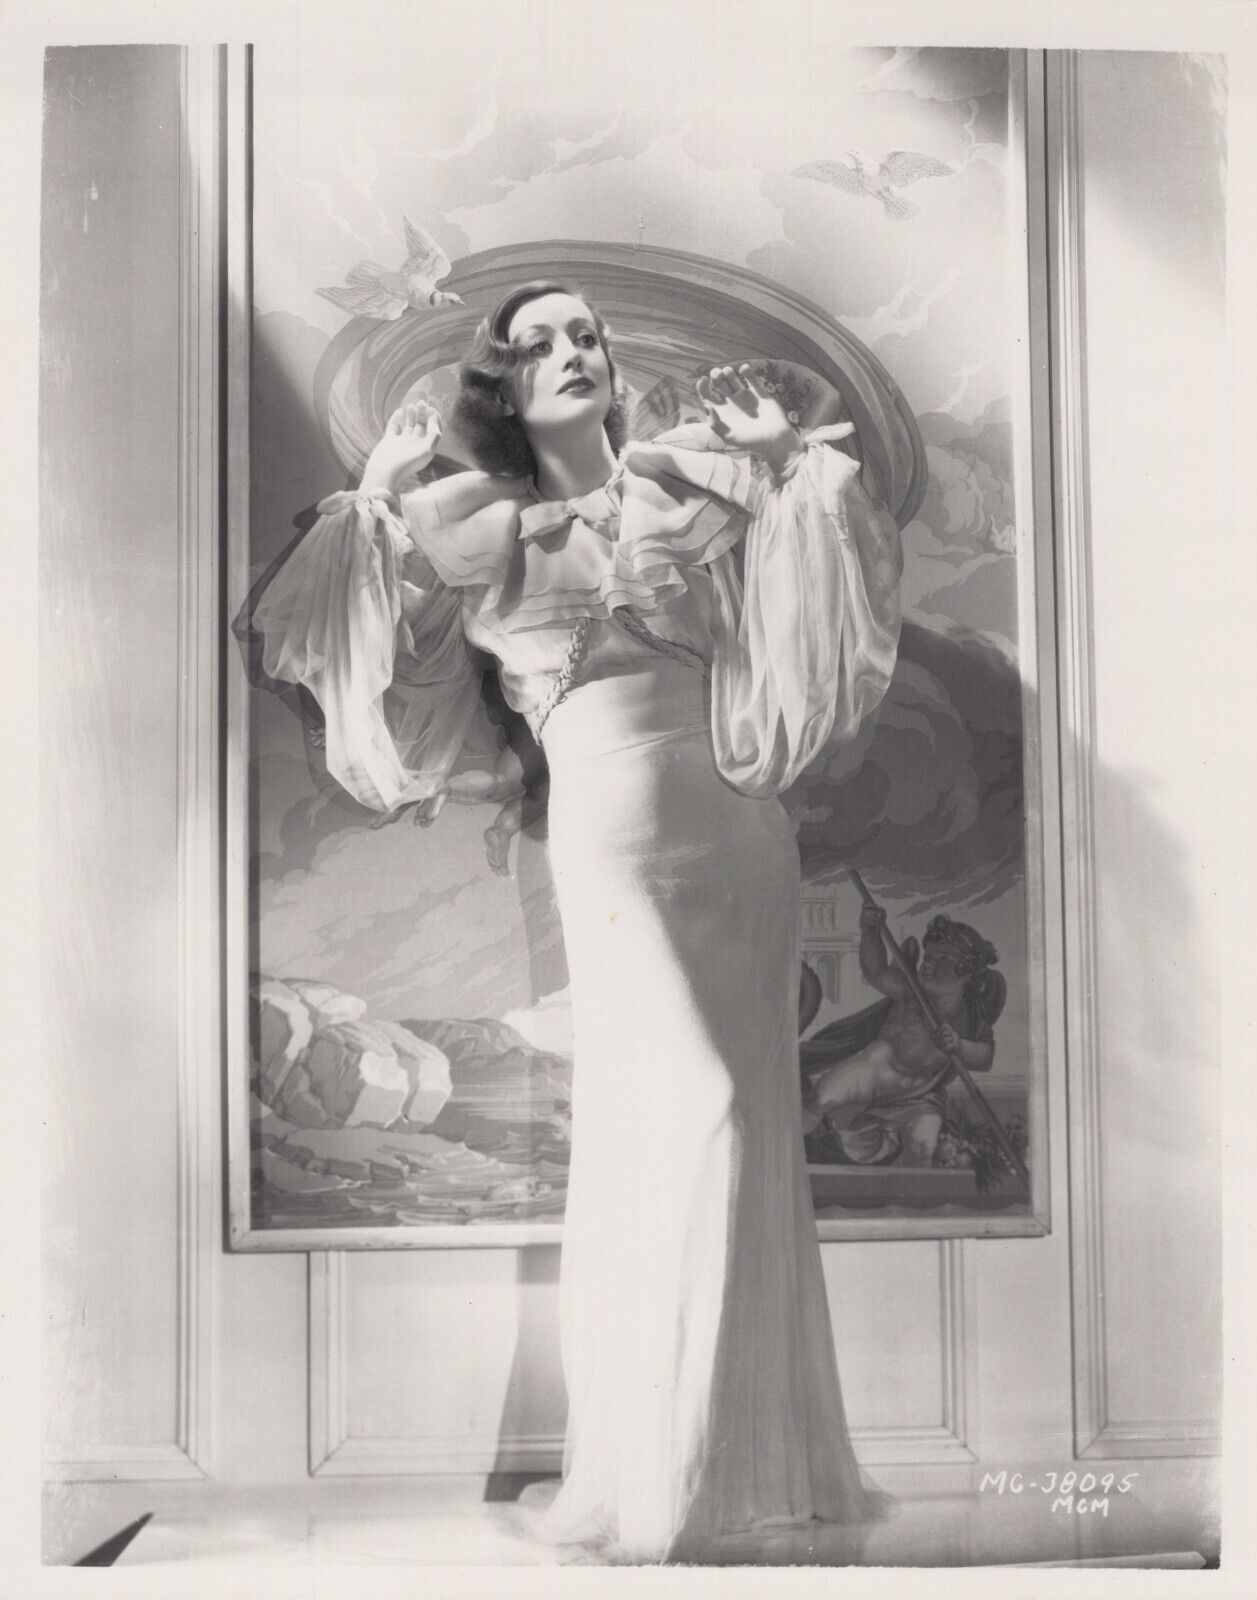 Joan Crawford (1970s) ❤ Hollywood Beauty - Stylish Glamorous Photo K 430